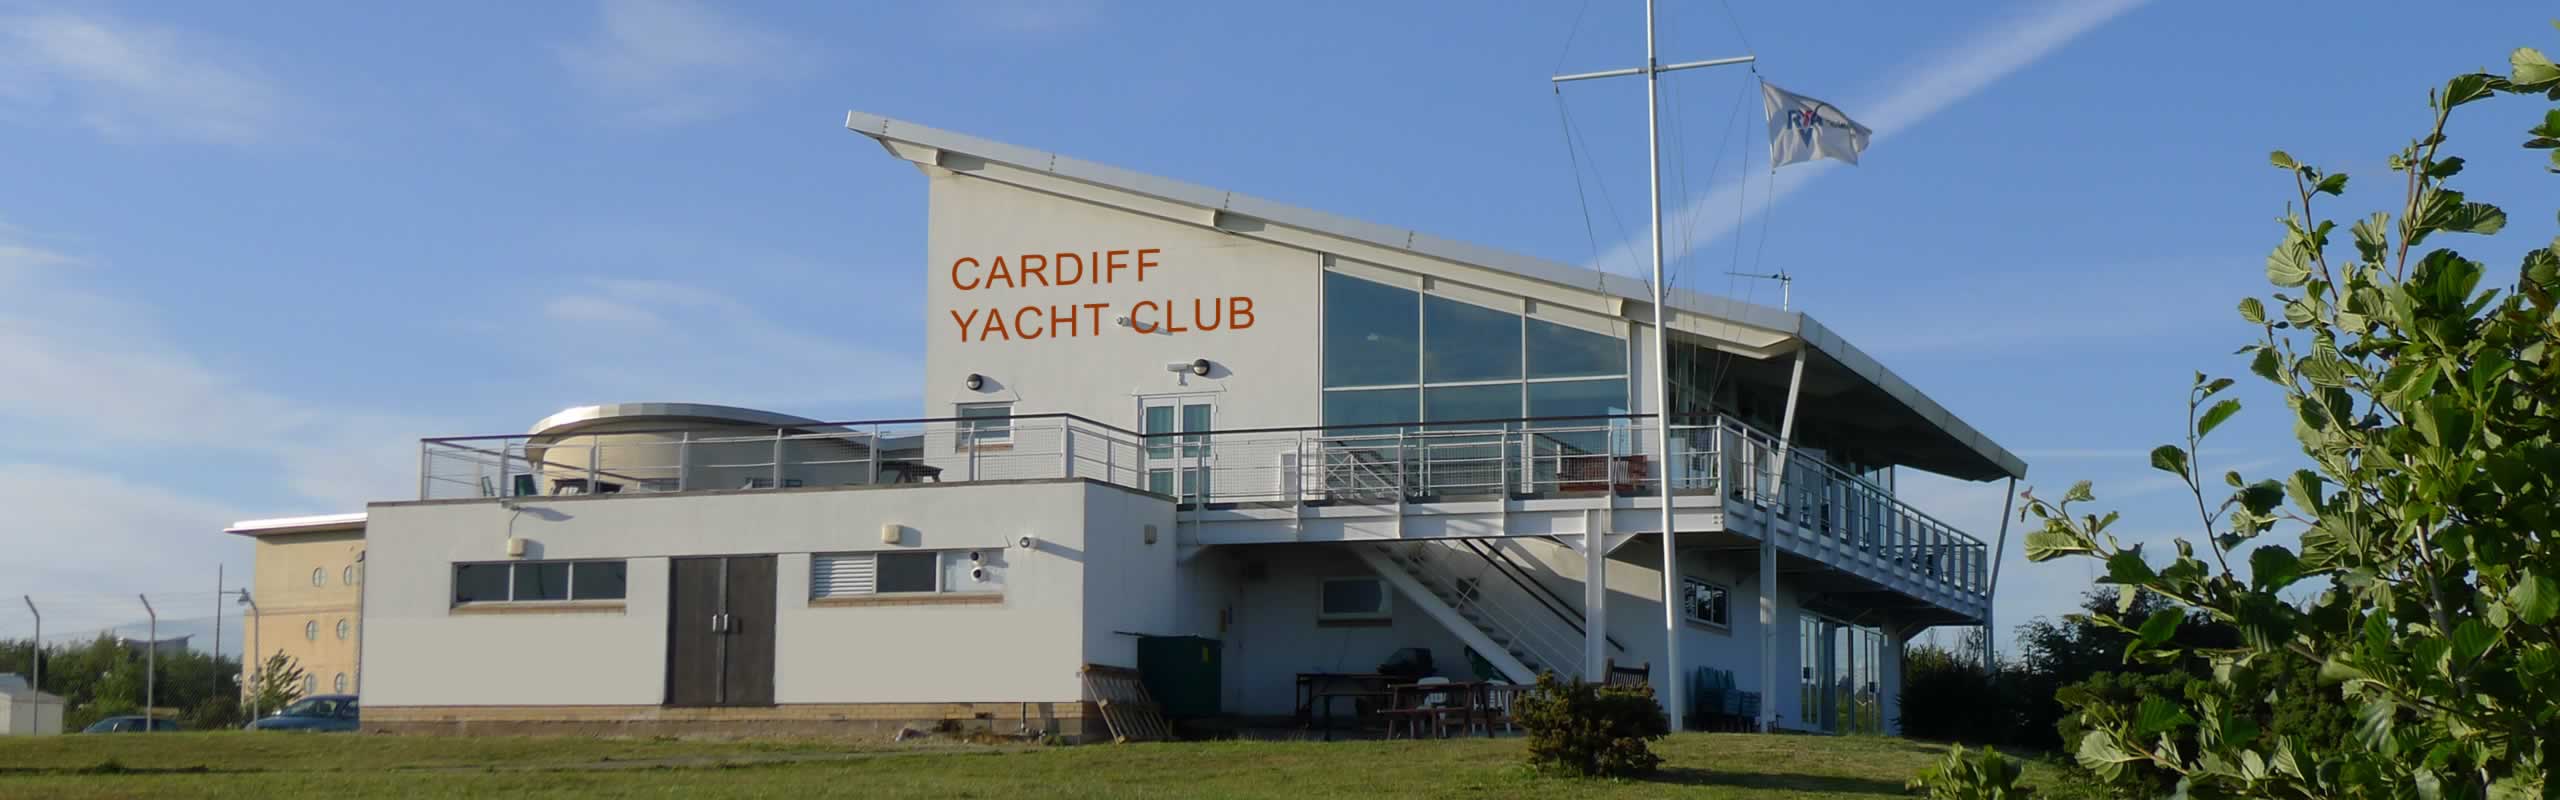 cardiff bay yacht club